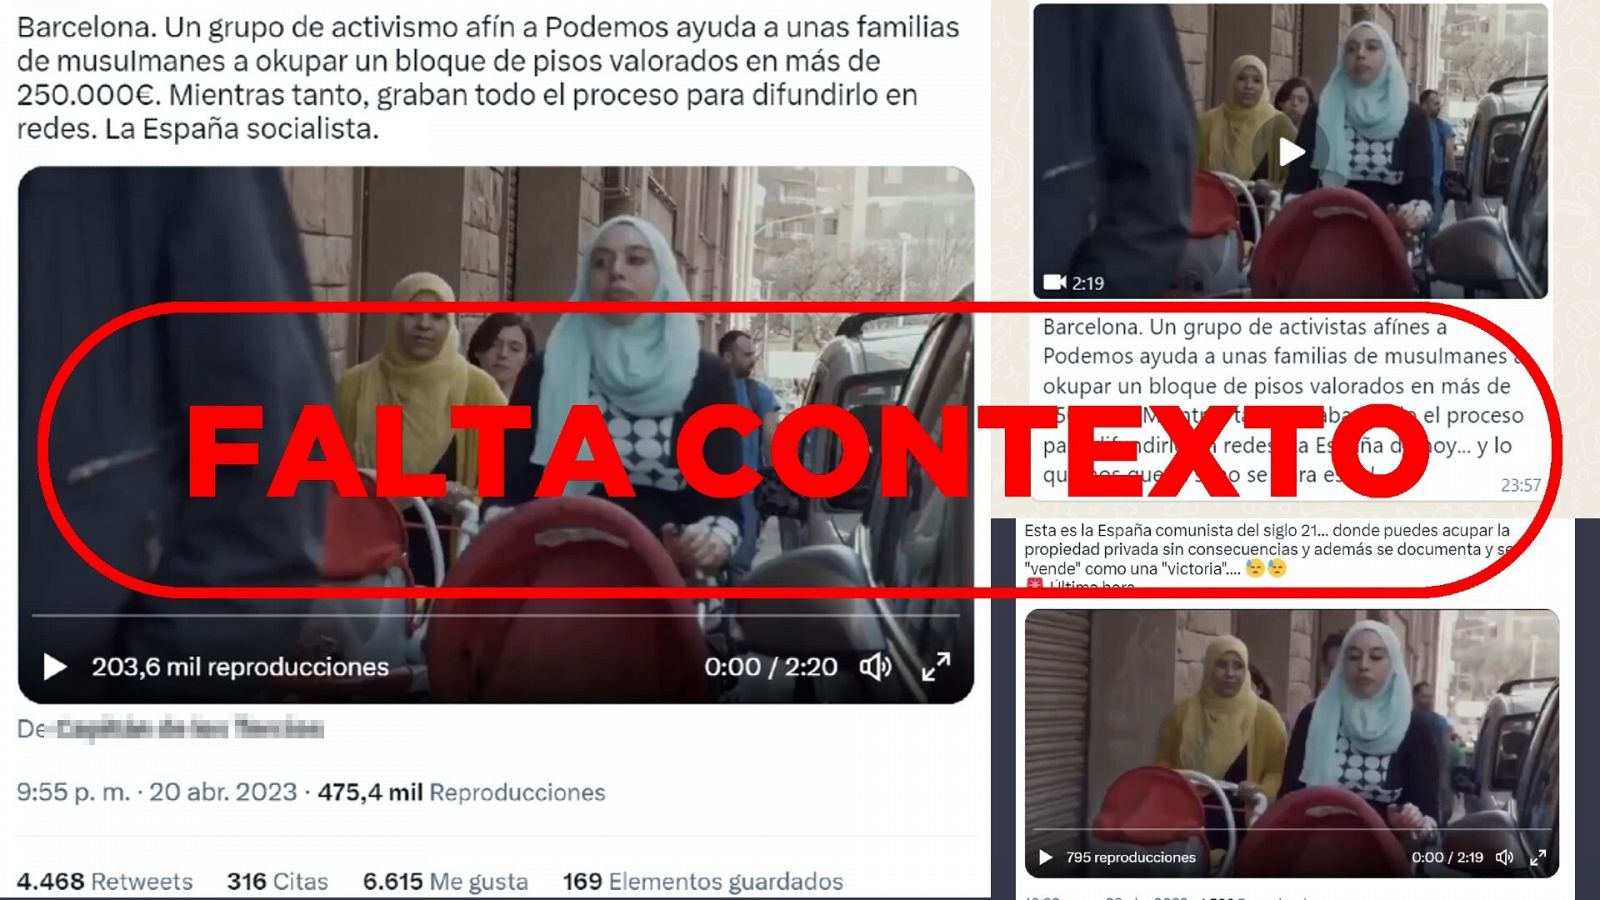 Mensajes en redes que difunden el vídeo de una okupación en Barcelona como si fuera un suceso actual, con el sello 'Falta contexto' en rojo